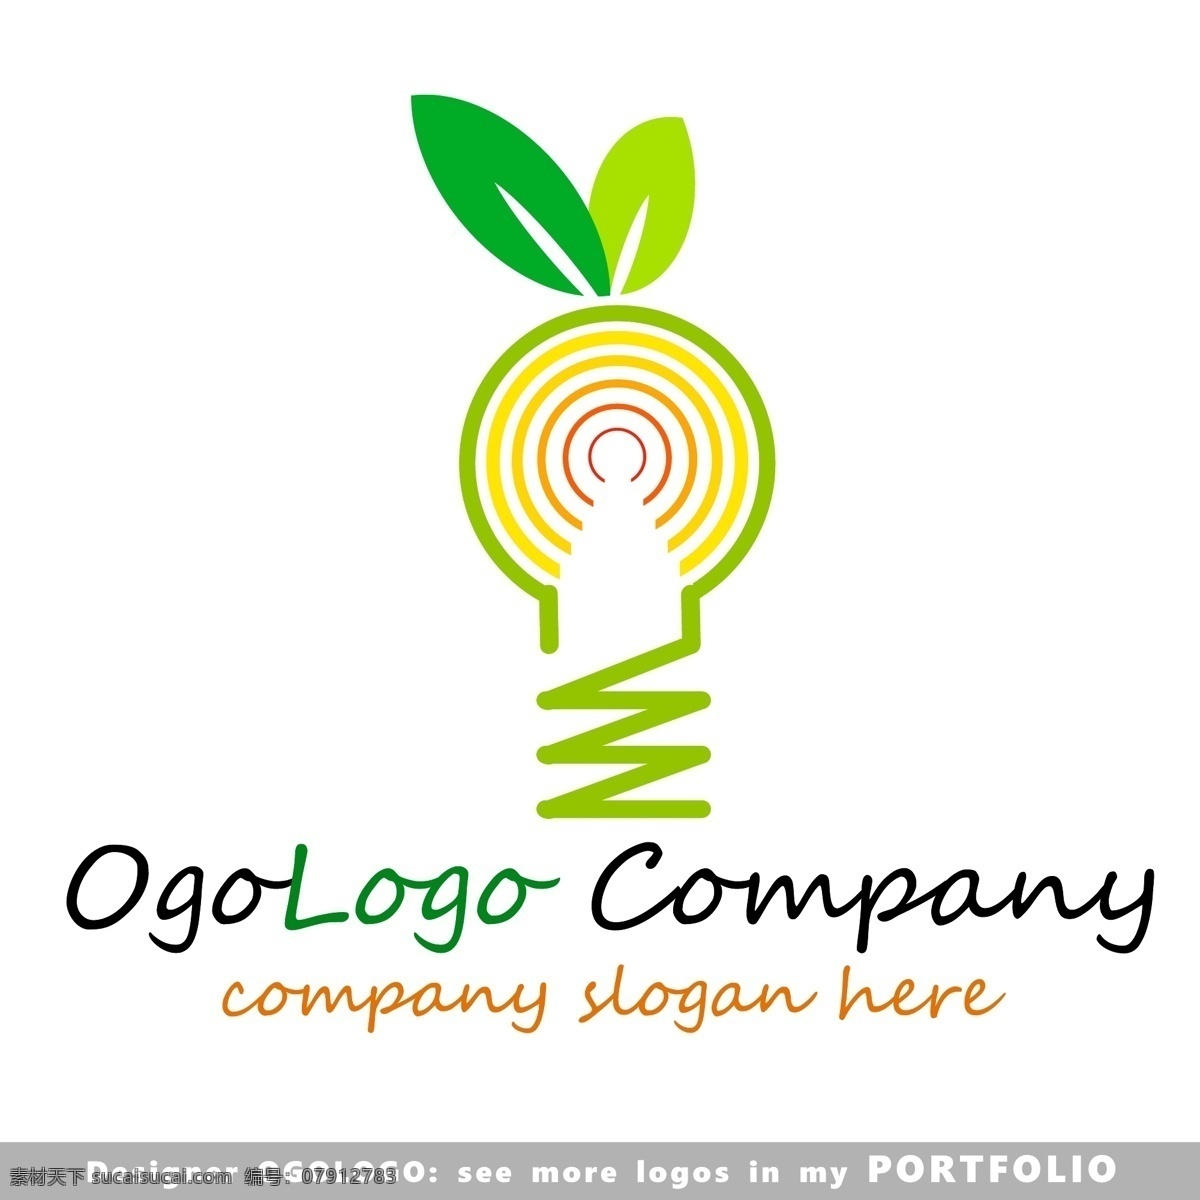 节能环保 logo 绿叶 树叶 电灯泡 绿色环保 logo图形 标志设计 公司logo 企业logo 创意 标志图标 矢量素材 白色